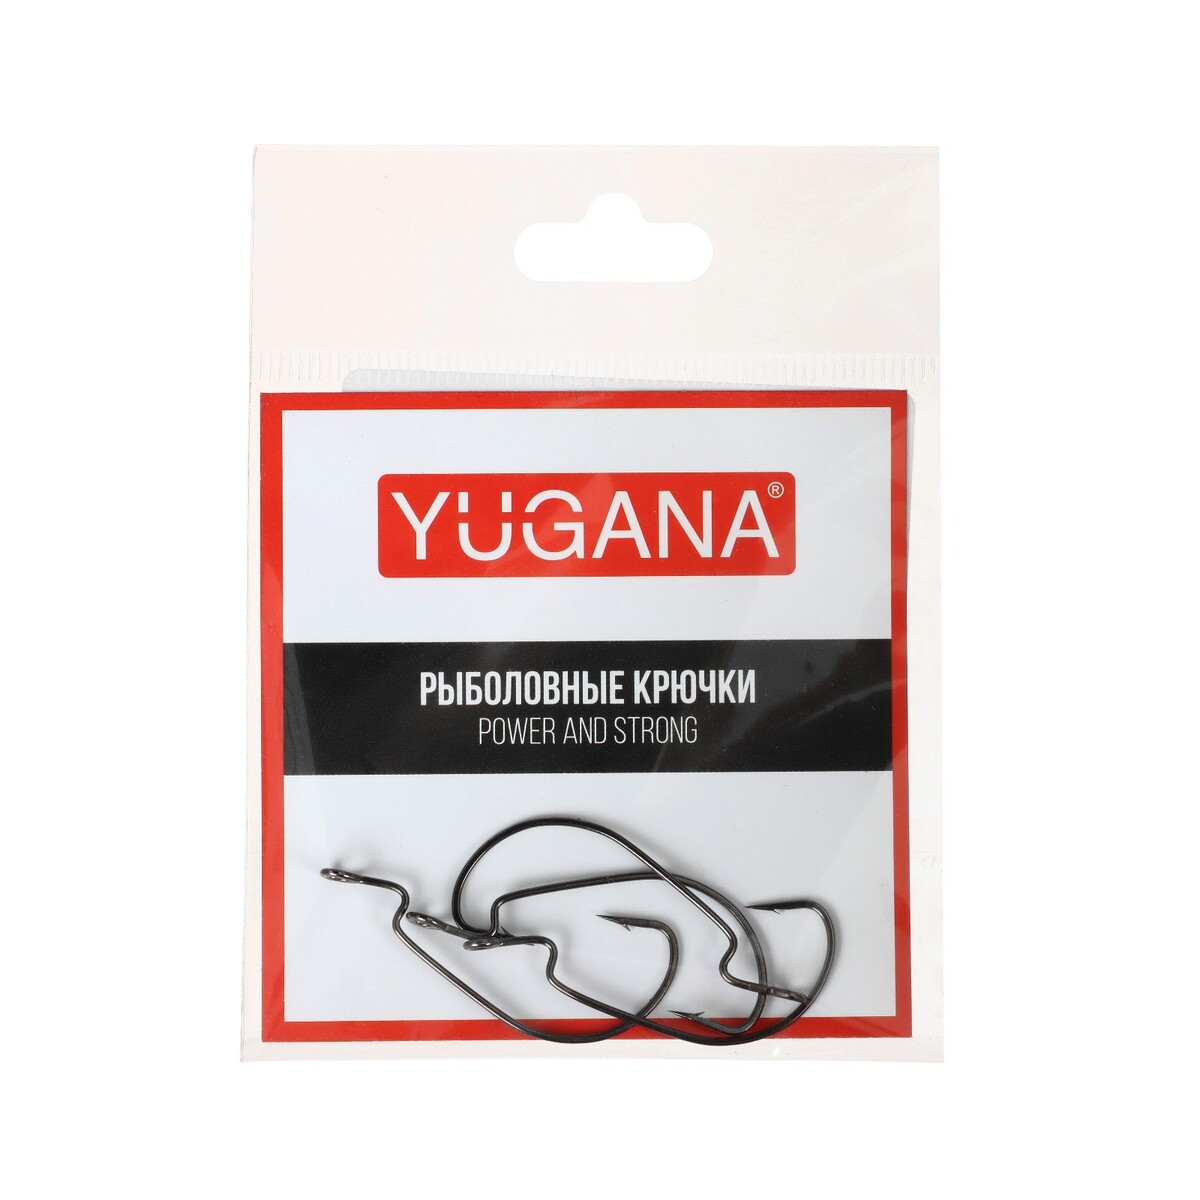   yugana wide range worm big eye,   4, 4 